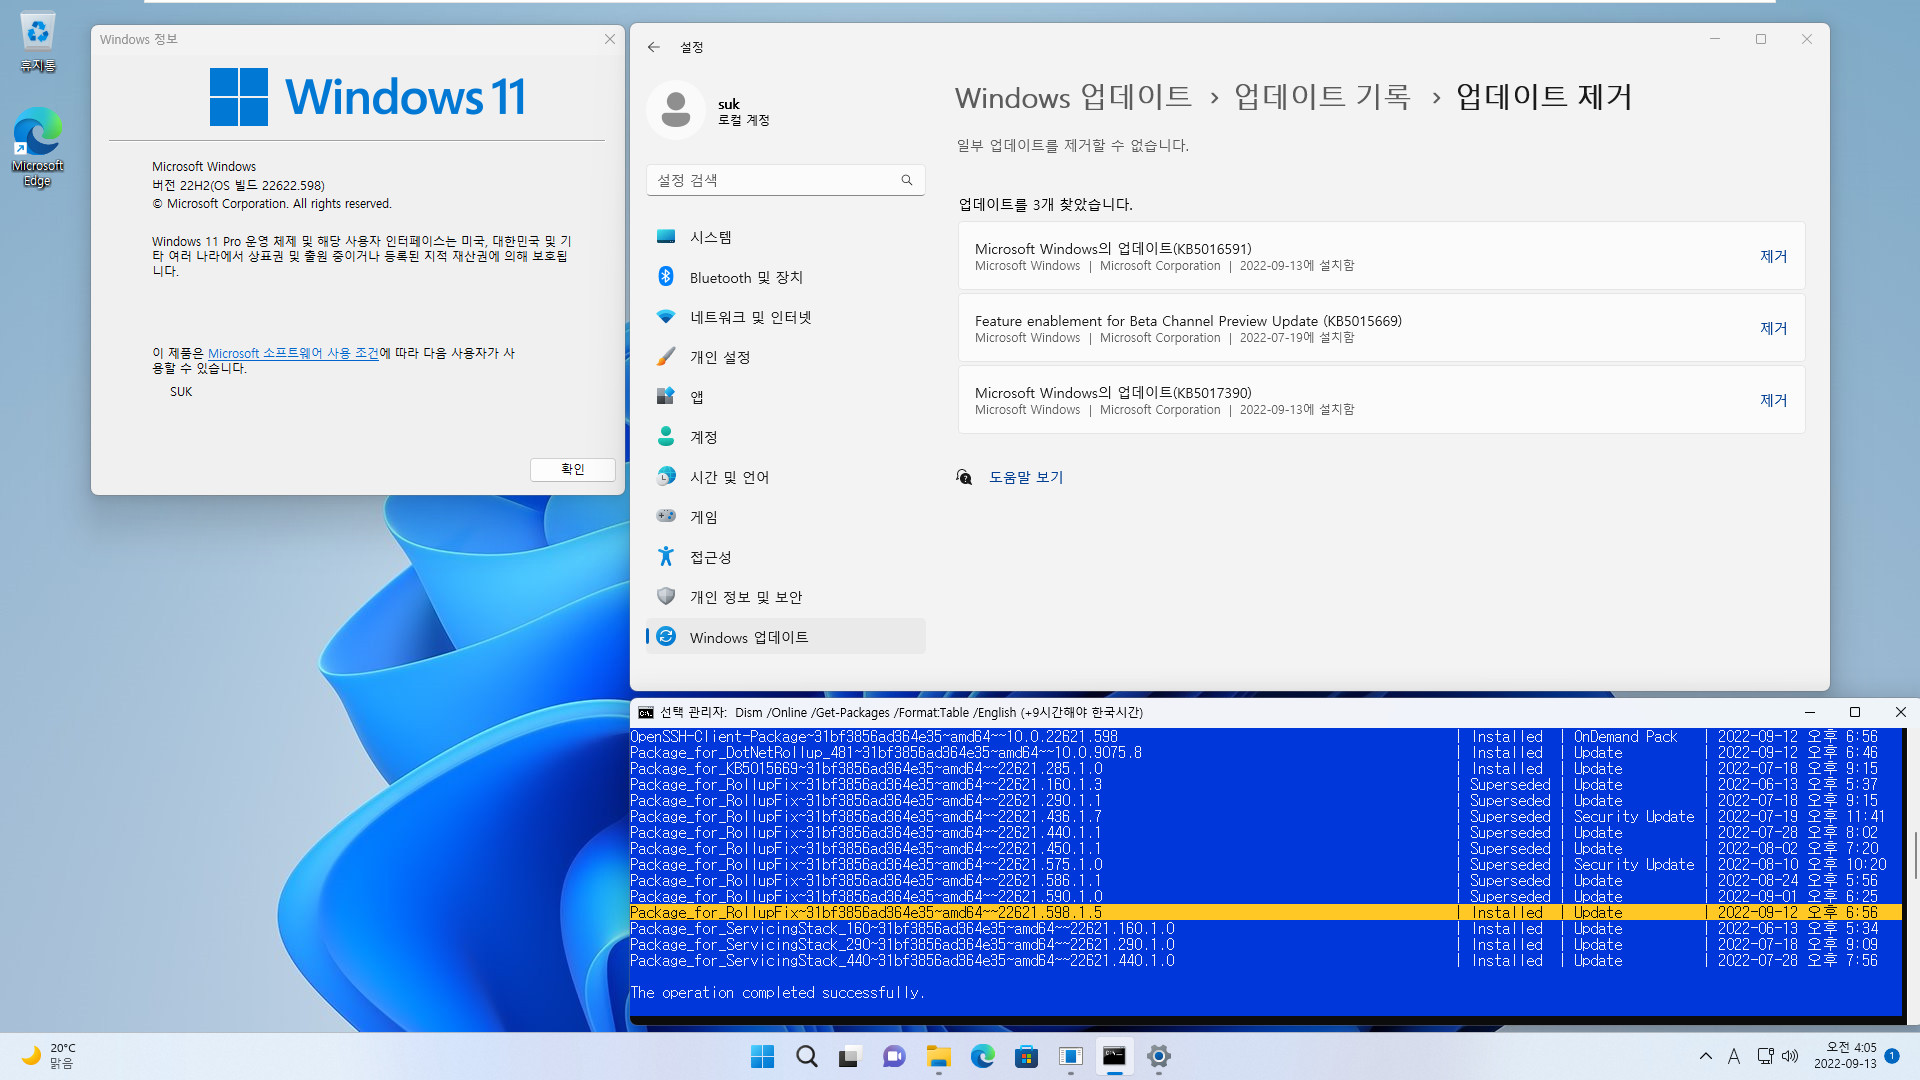 2022-09-13 화요일 - 베타 채널 - Windows 11 버전 22H2, 빌드 22622.598 + 22621.598 - 누적 업데이트 KB5017390 - vmware에 설치 테스트 2022-09-13_040501.jpg